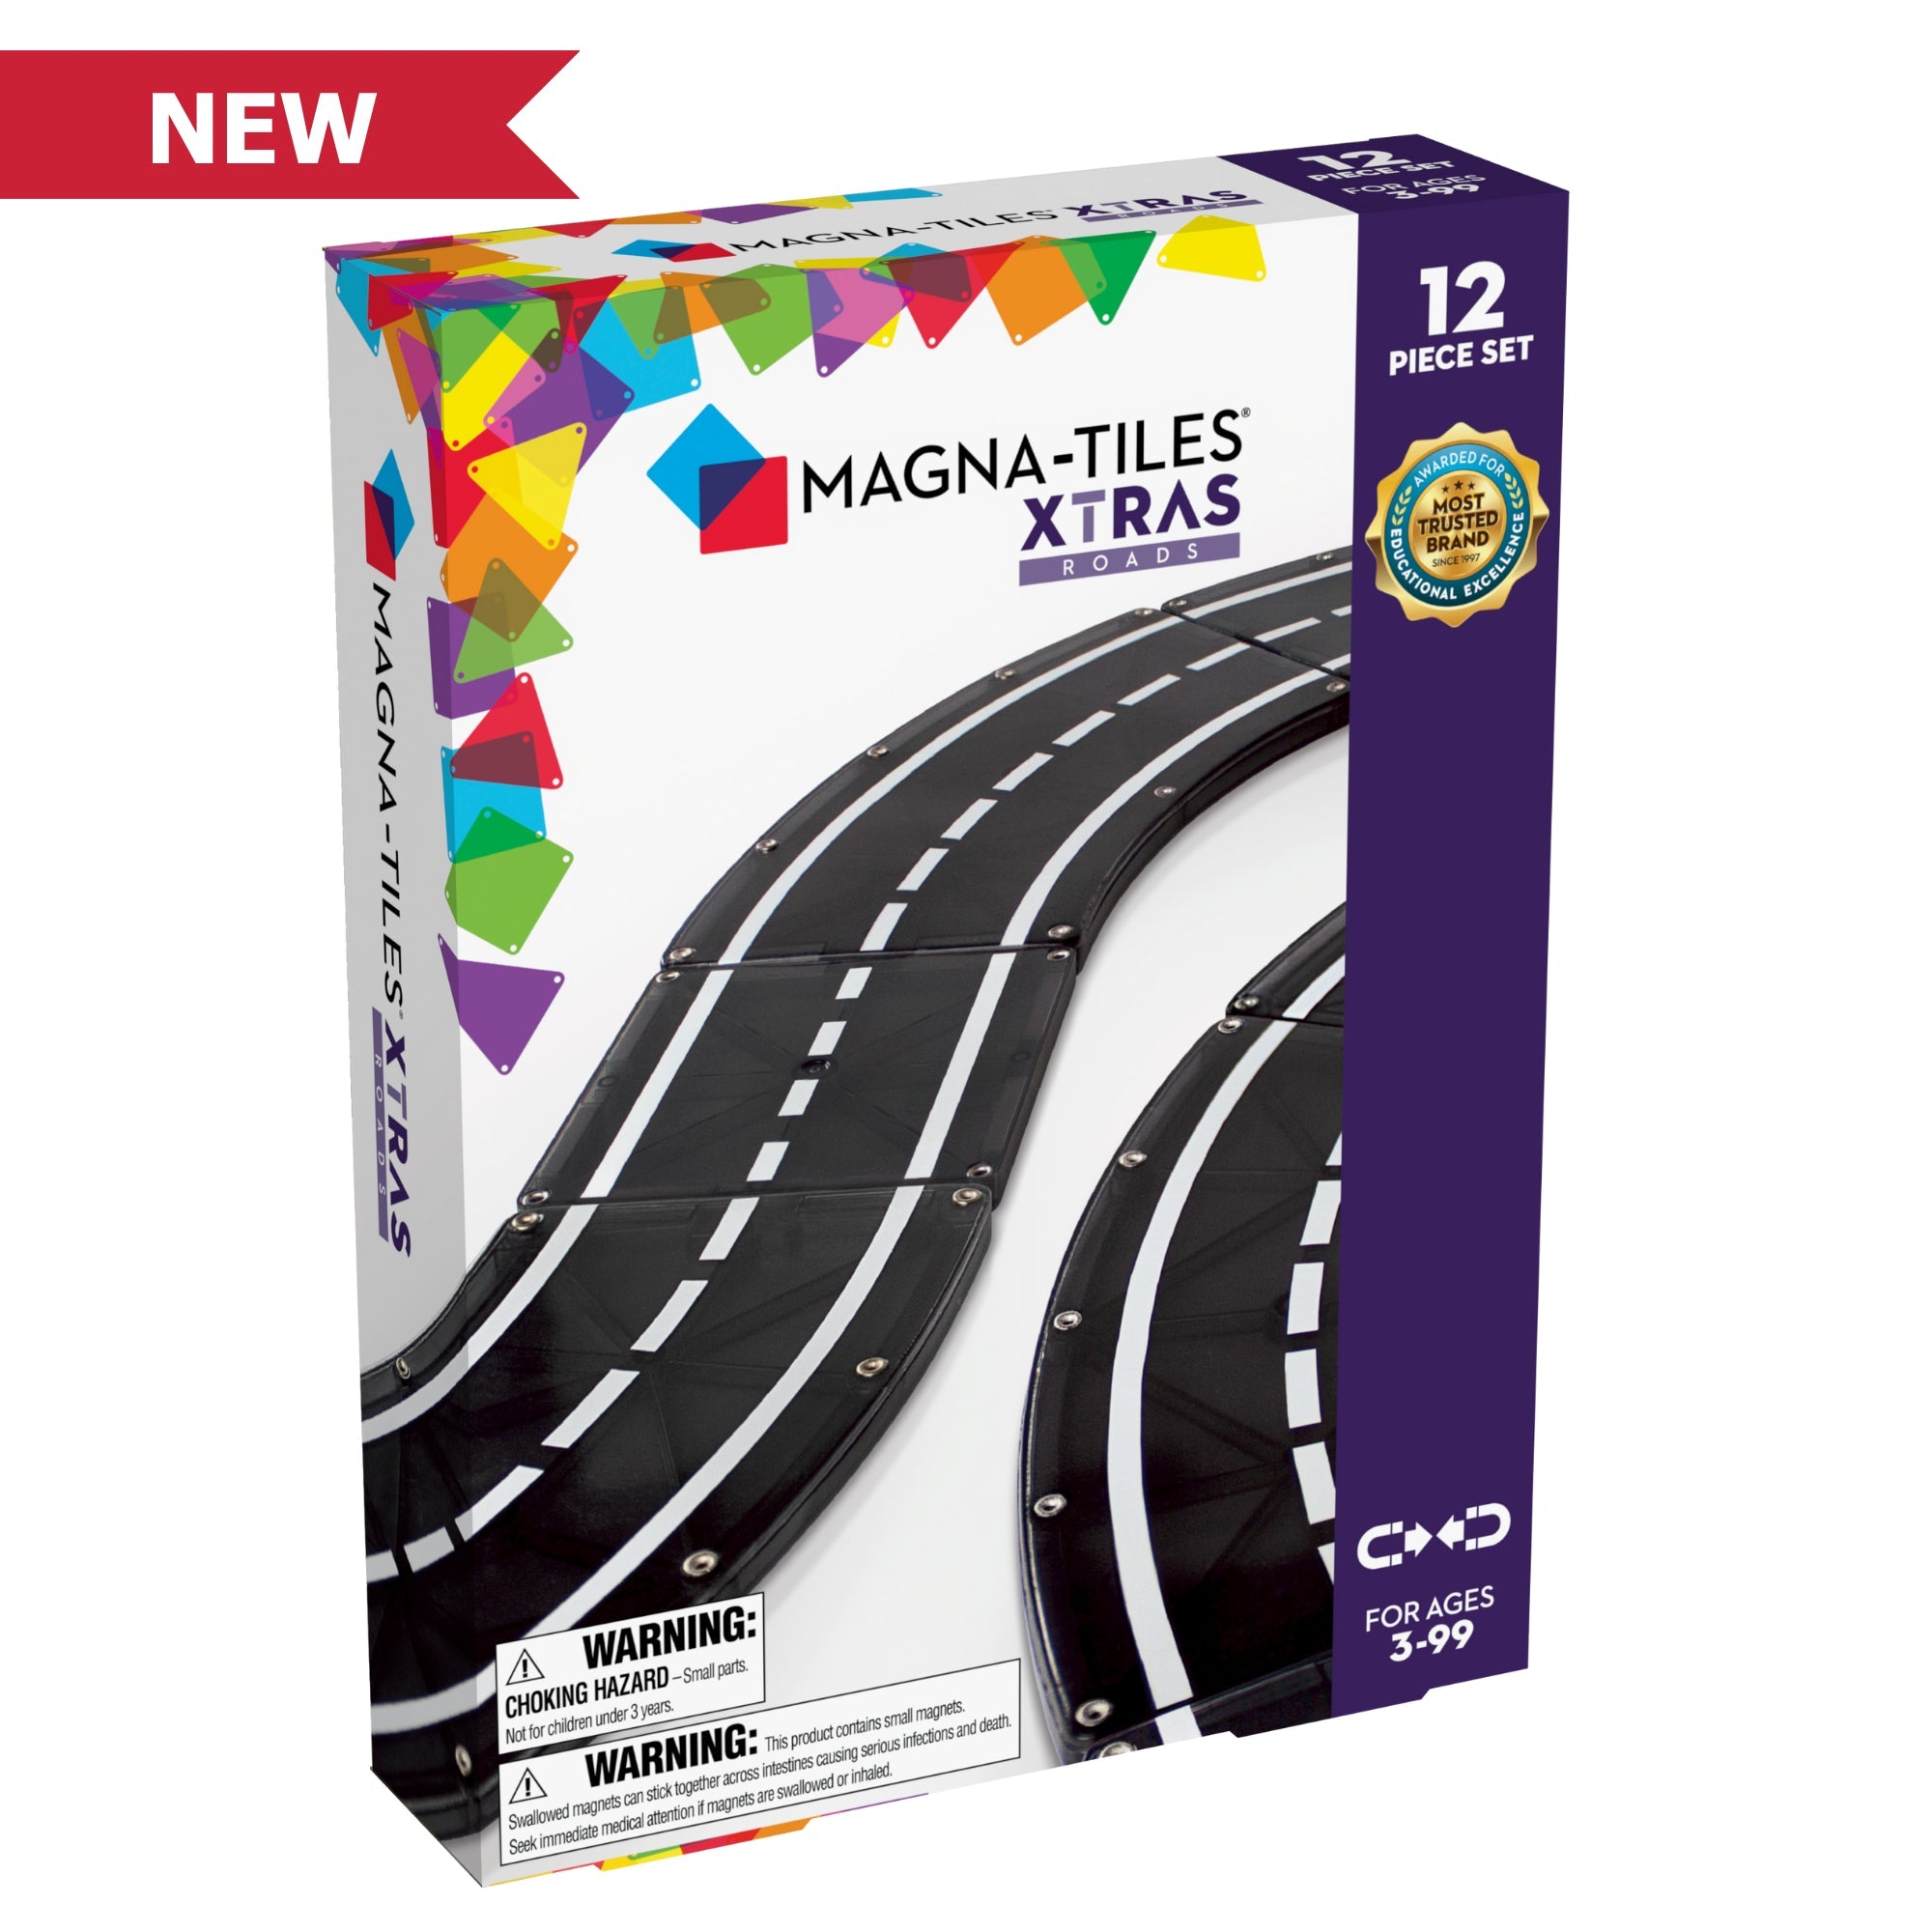 Magna-Tiles XTRA: Roads 12-Piece Set